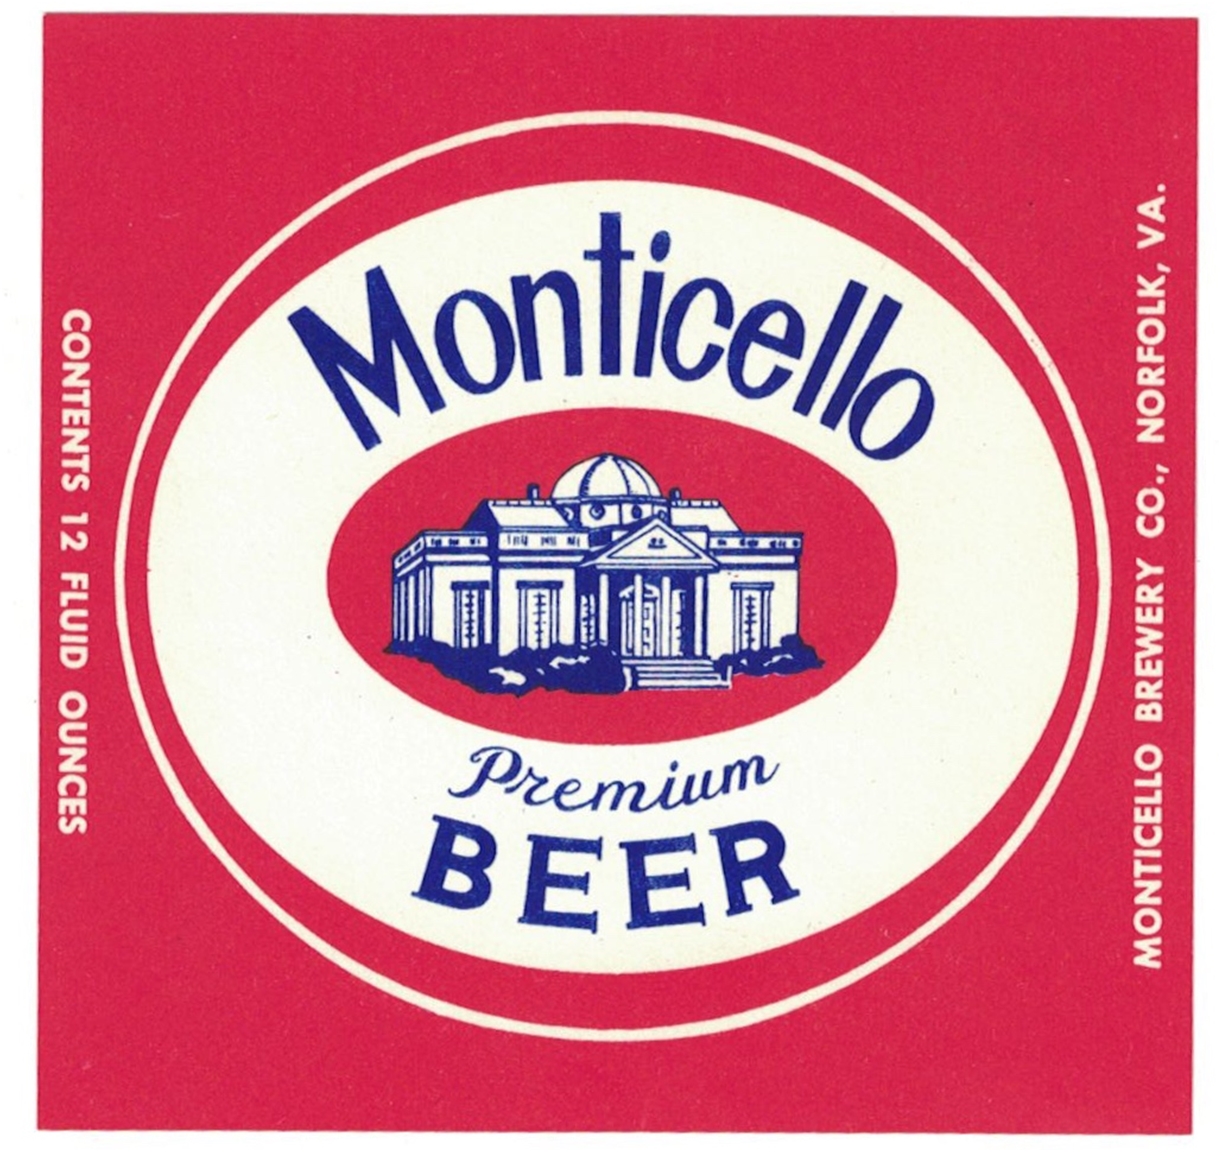 Monticello Premium Beer Label 